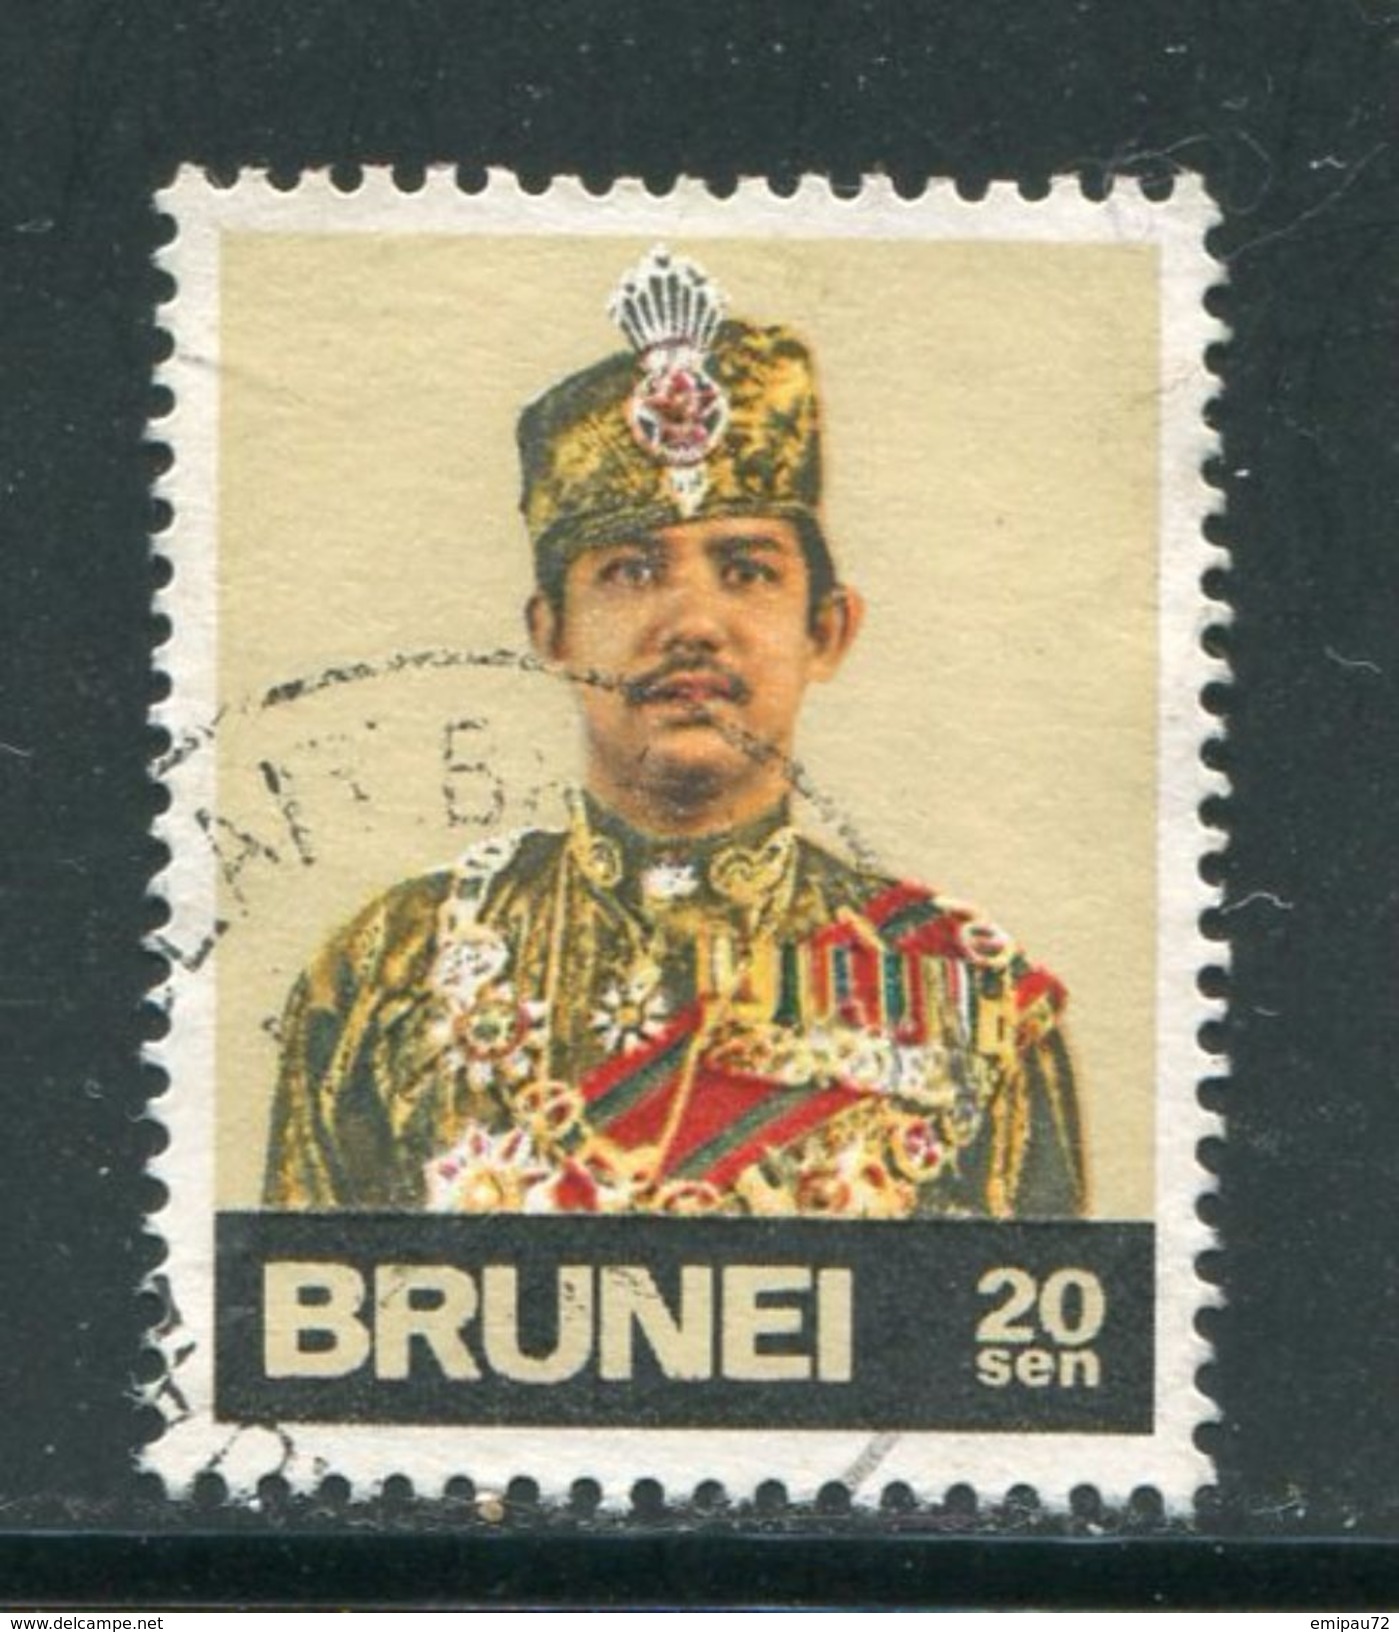 BRUNEI- Y&T N°221- Oblitéré - Brunei (...-1984)